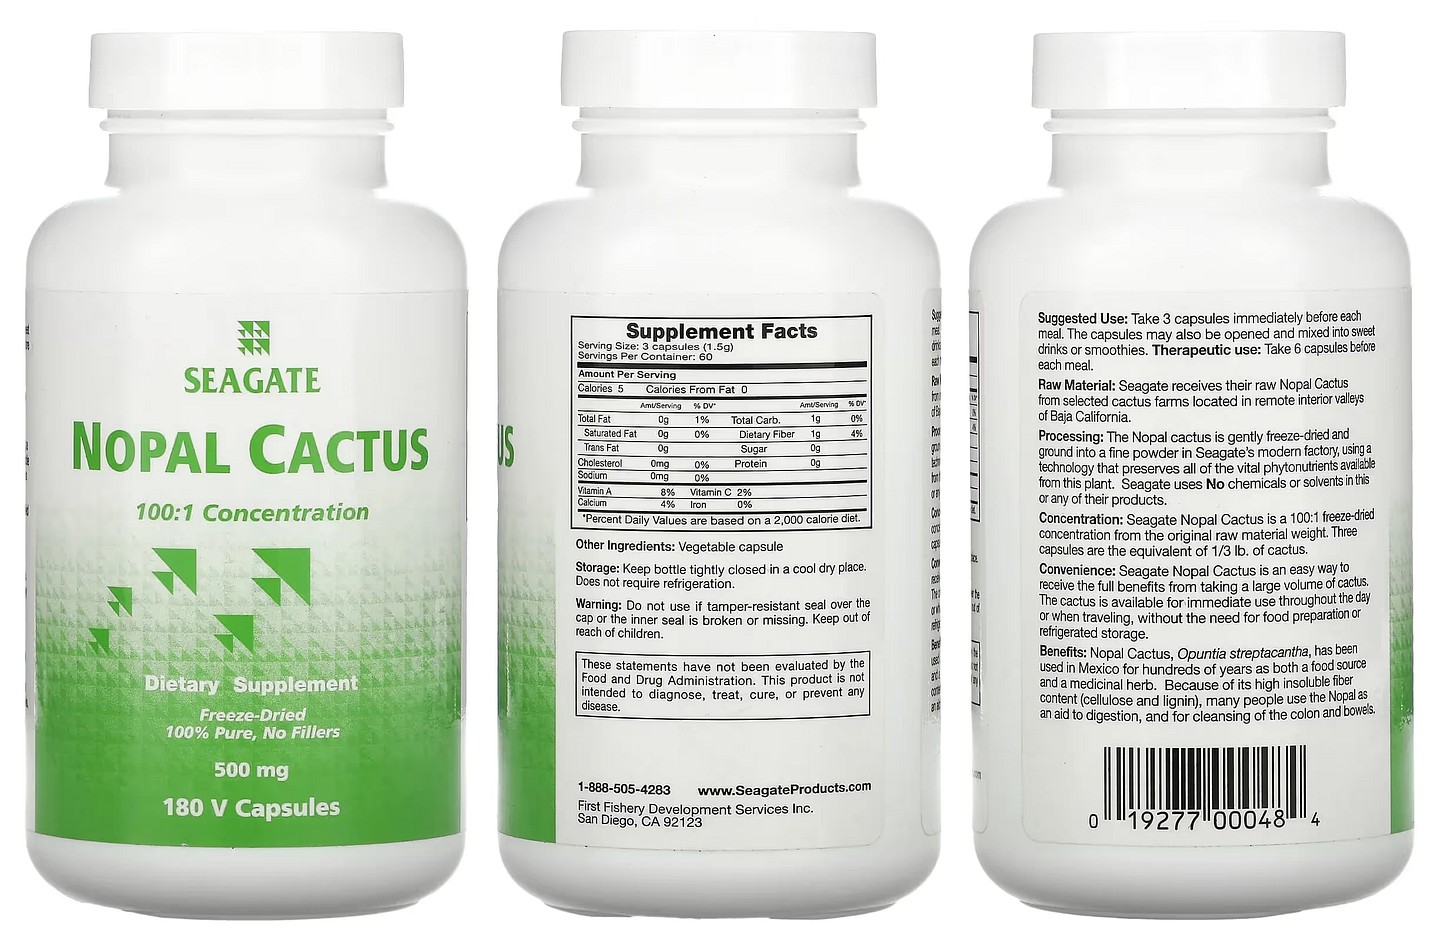 Seagate, Nopal Cactus packaging